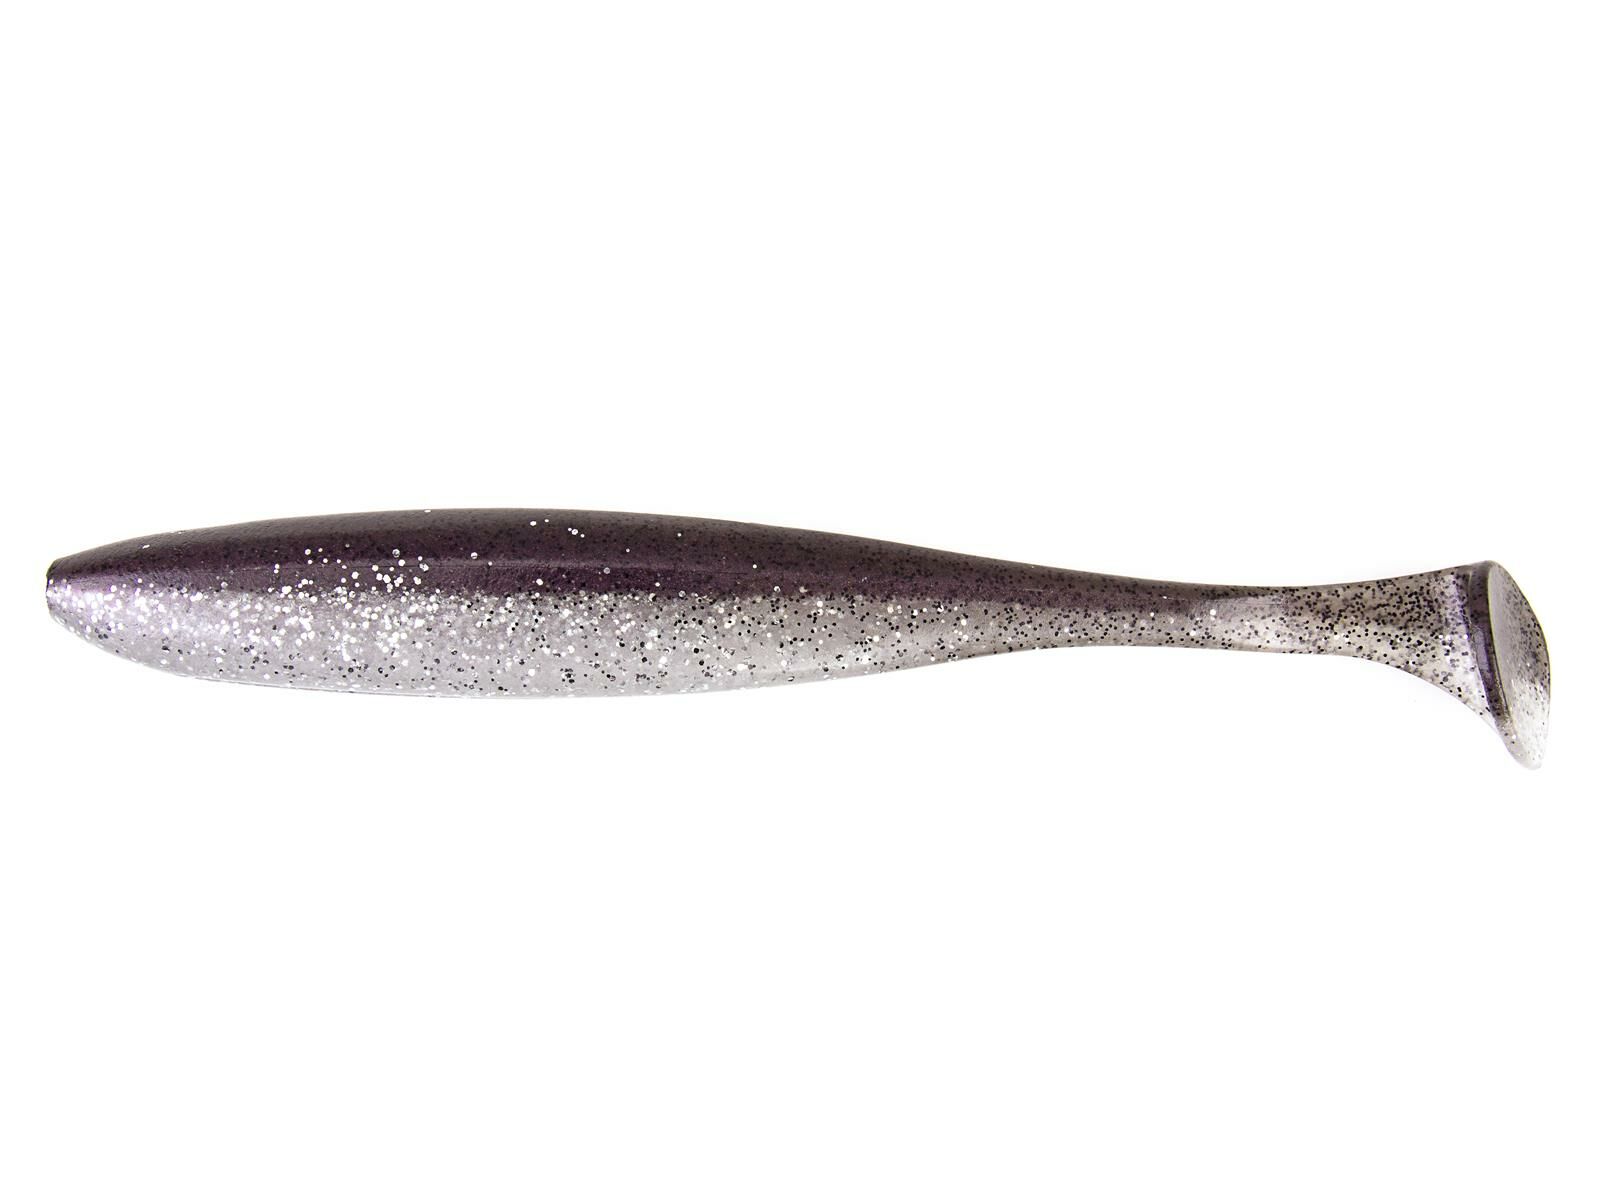 8" Easy Shiner - Kokanee Salmon